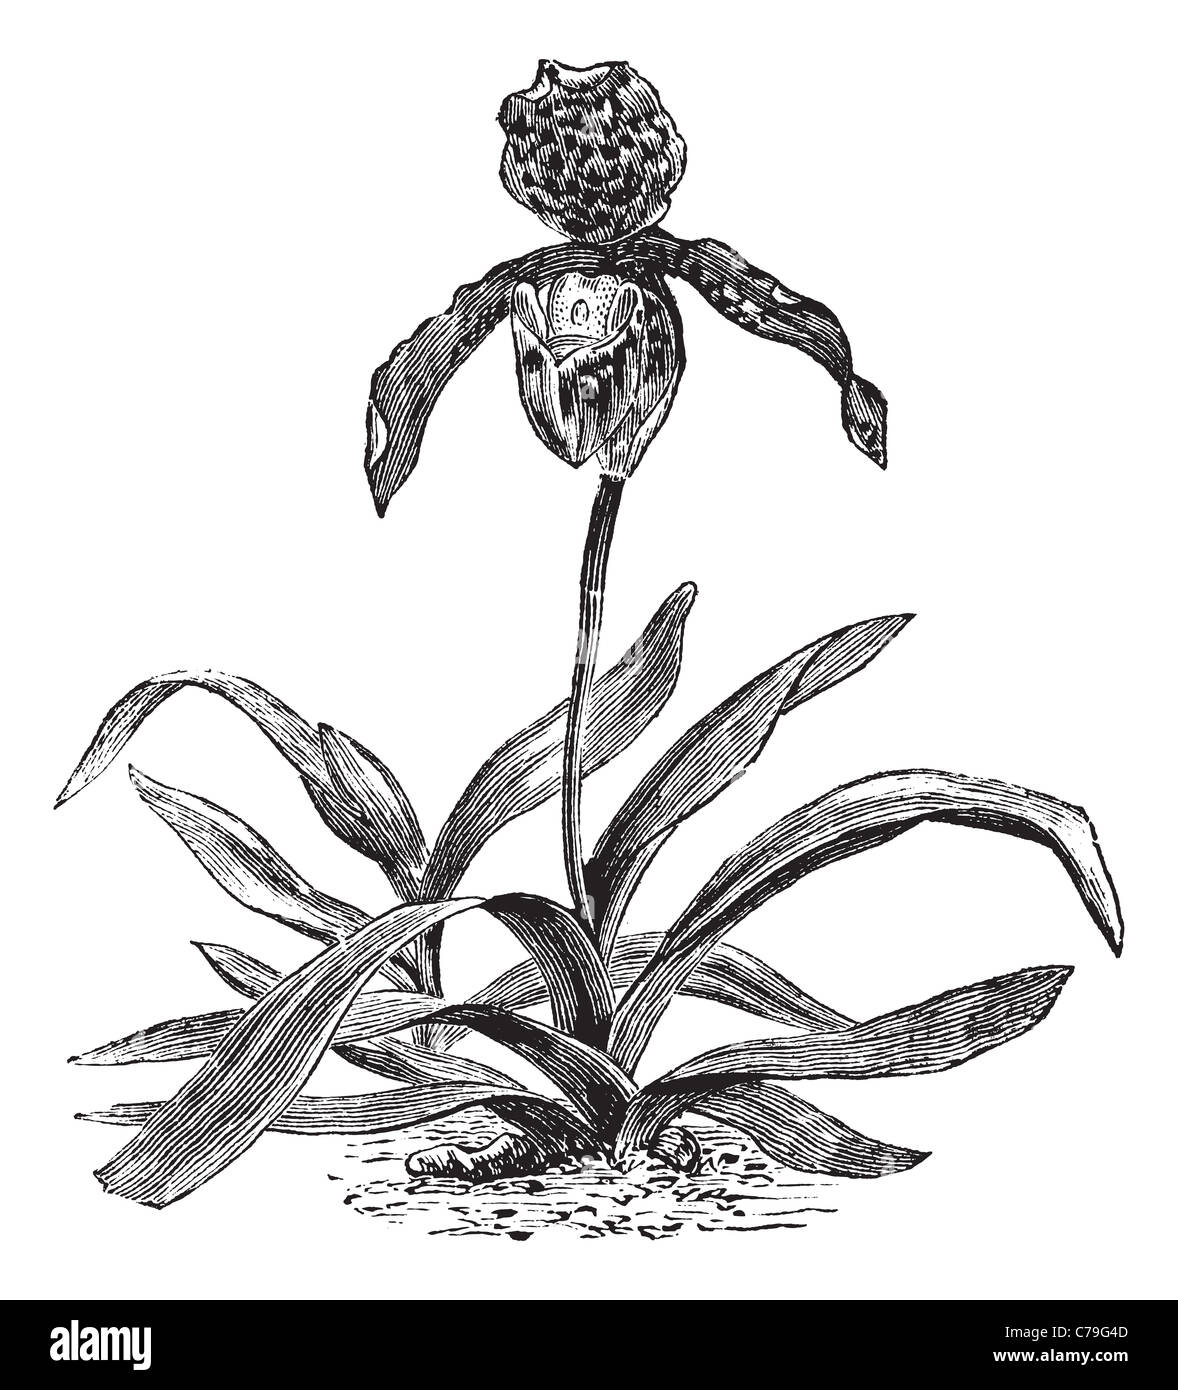 Orchidées Paphiopedilum, gravure d'époque. Gravée ancienne illustration d'une orchidée Paphiopedilum montrant fleur. Banque D'Images